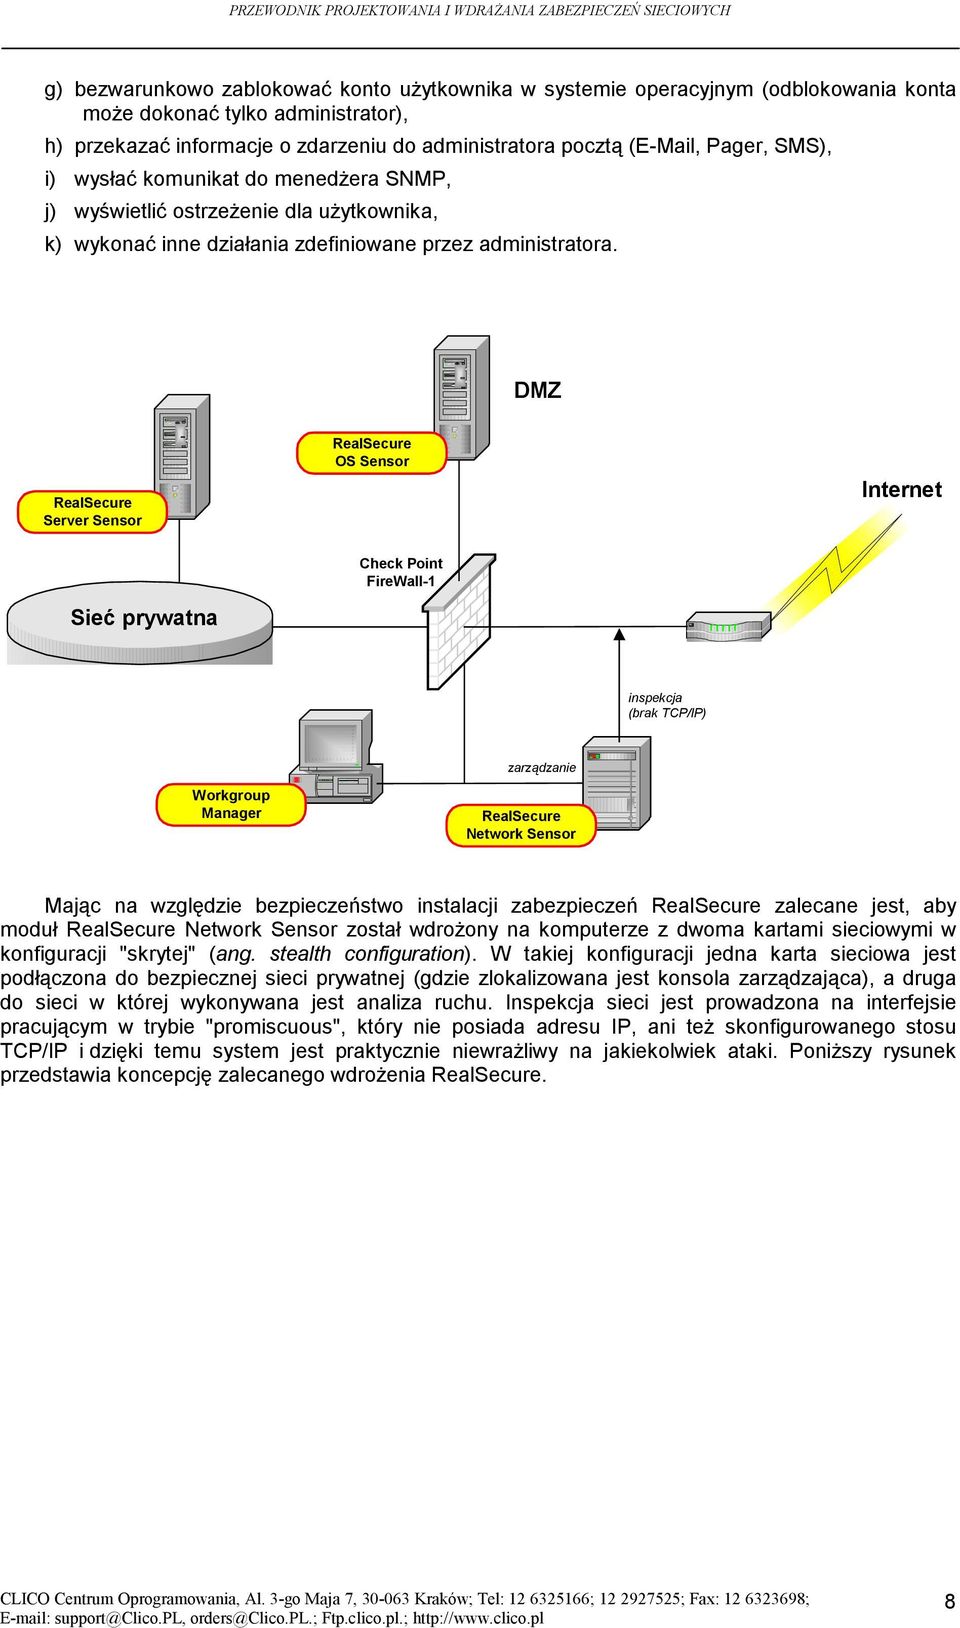 DMZ RealSecure Server Sensor RealSecure OS Sensor Internet Sieć prywatna Check Point FireWall-1 inspekcja (brak TCP/IP) zarządzanie Workgroup Manager RealSecure Network Sensor Mając na względzie